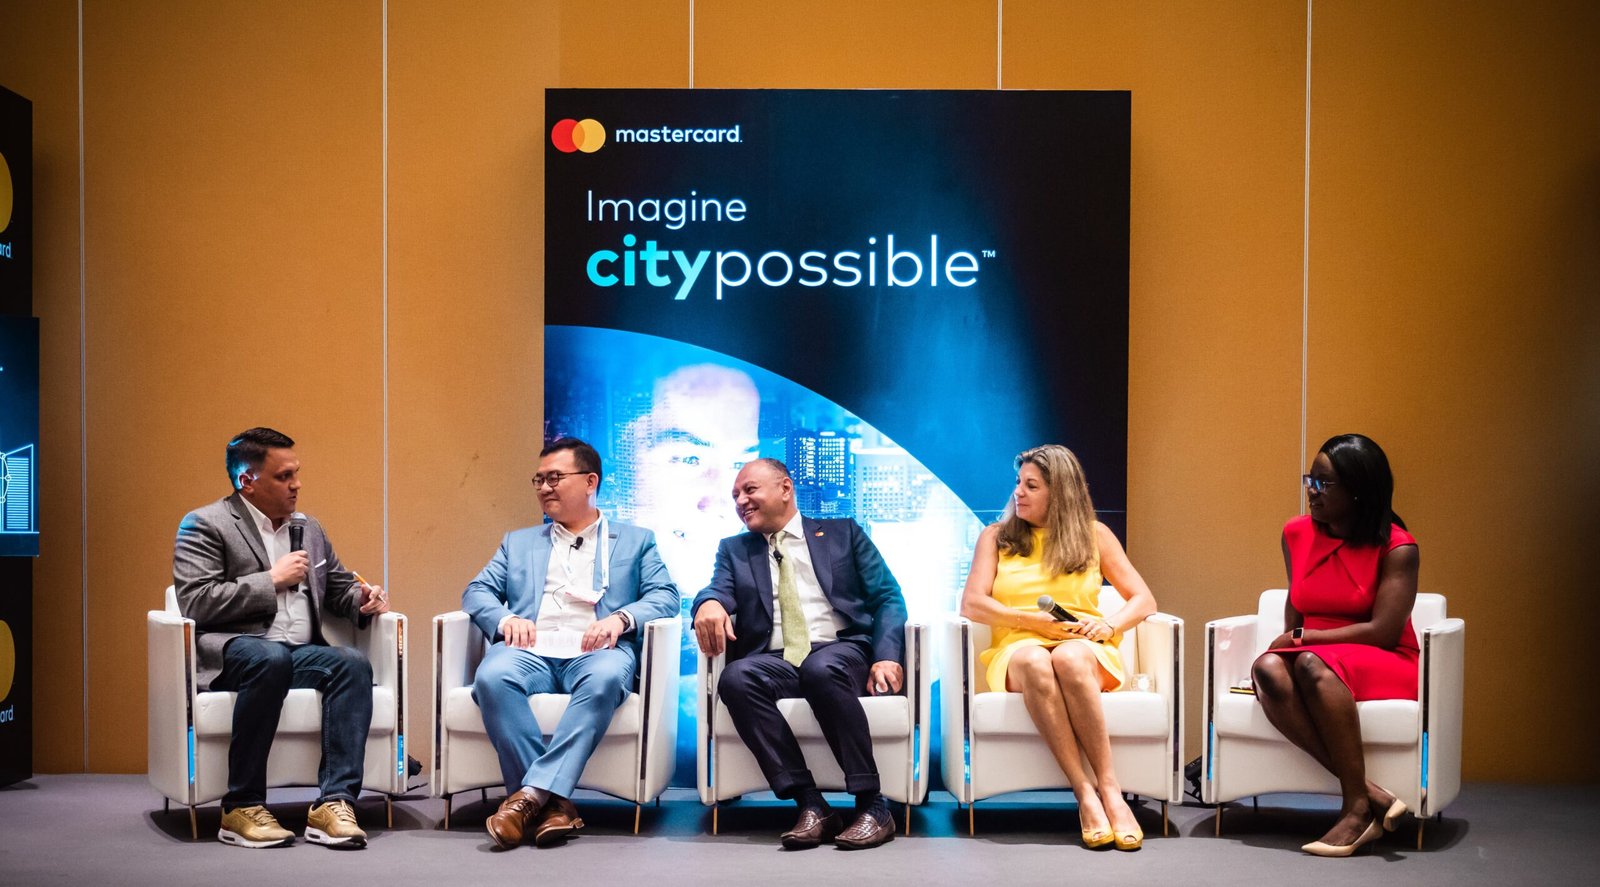 ماستركارد: المدن الذكية المفتاح لمستقبل أكثر ترابطا للشرق الأوسط وأفريقيا